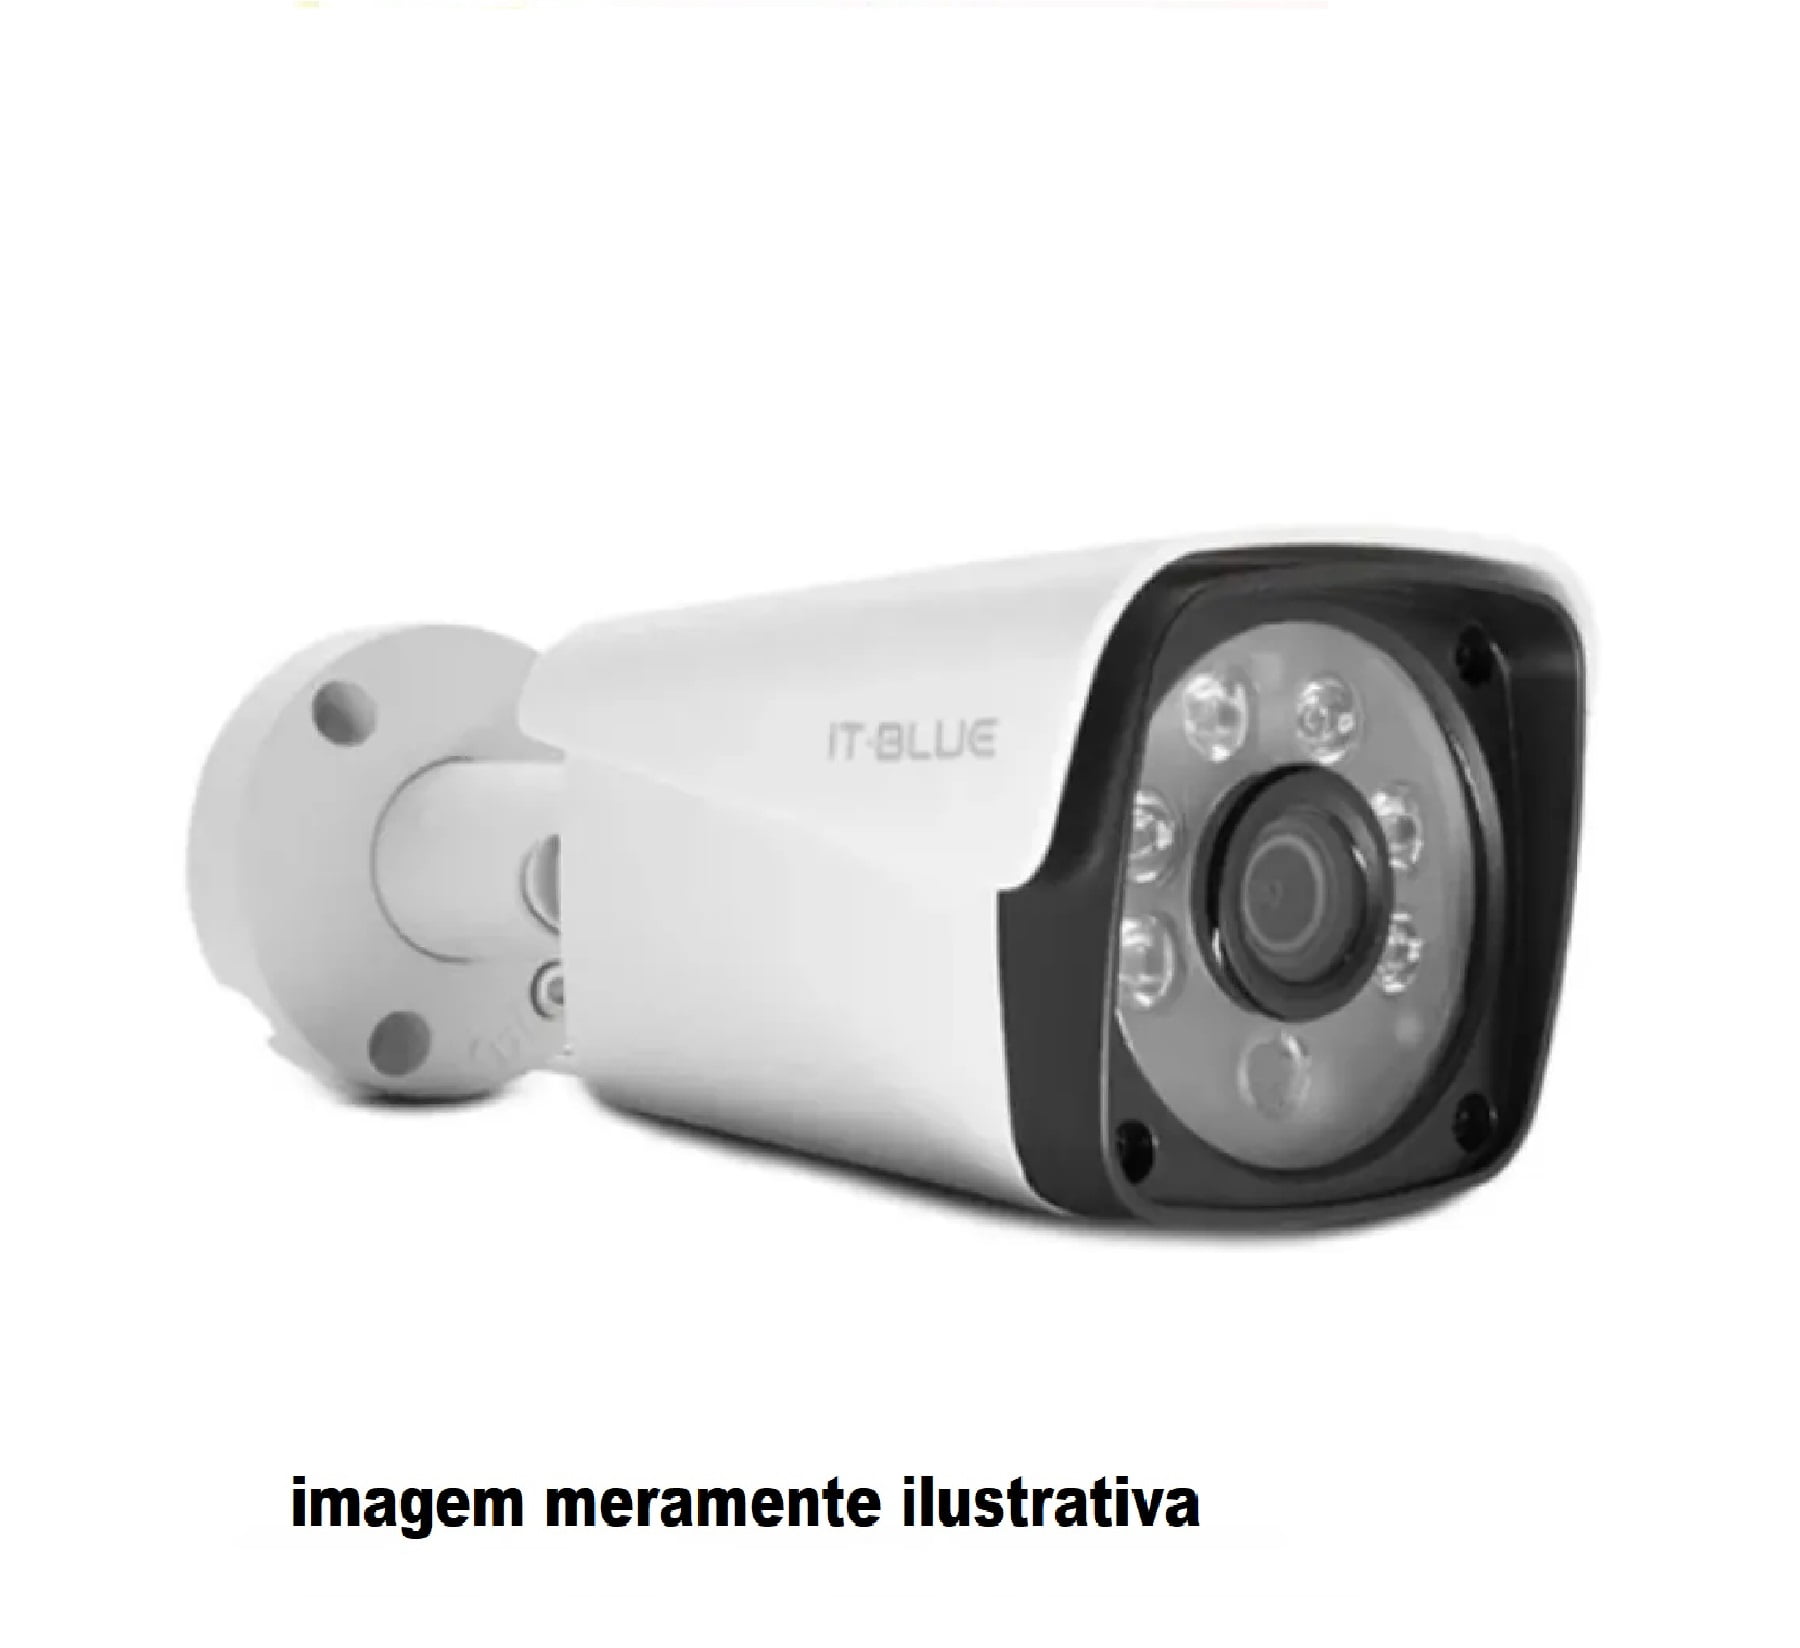 Camera De Segurança Hibrida Full Hd   1 1080p  Sc9205,